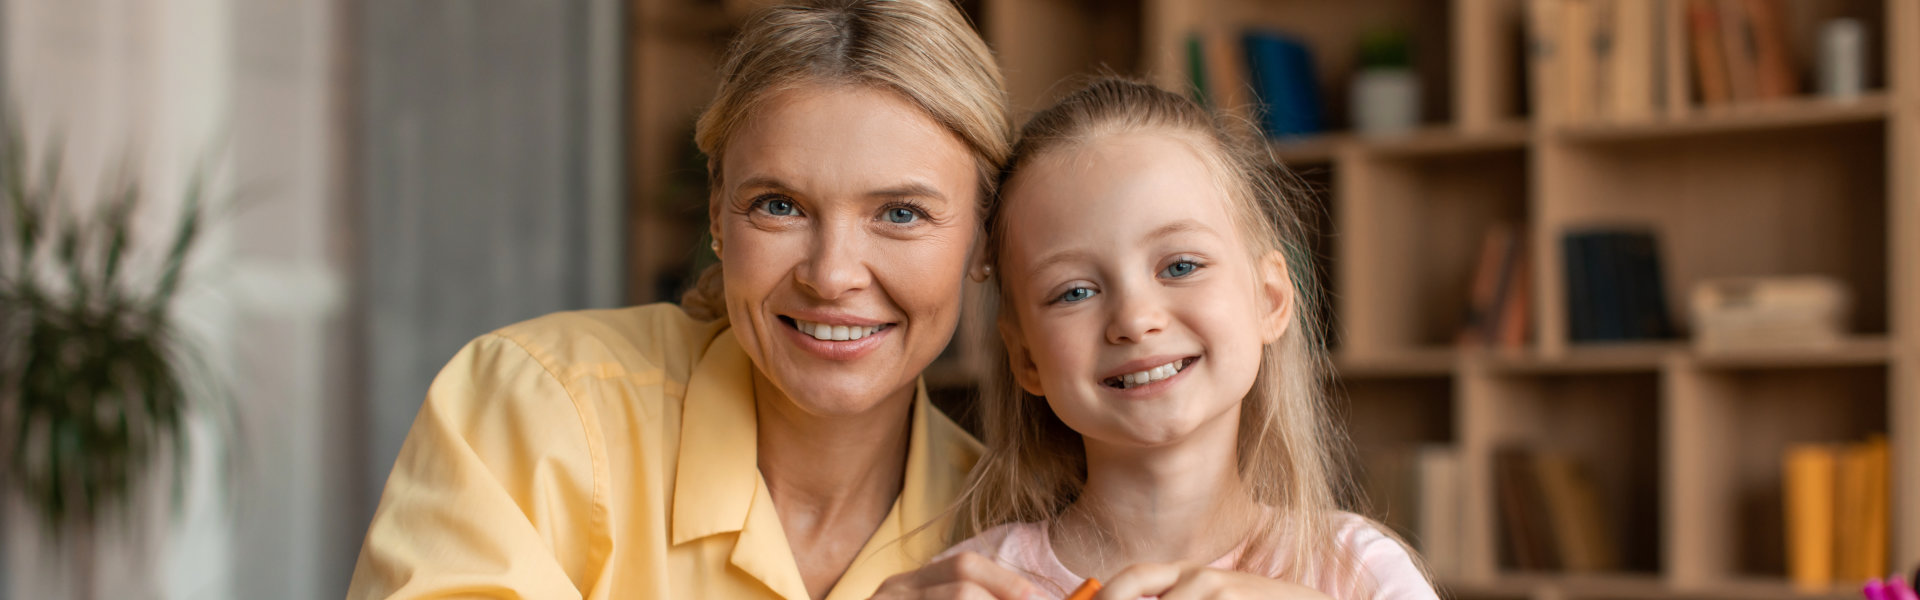 teacher and little girl smiling